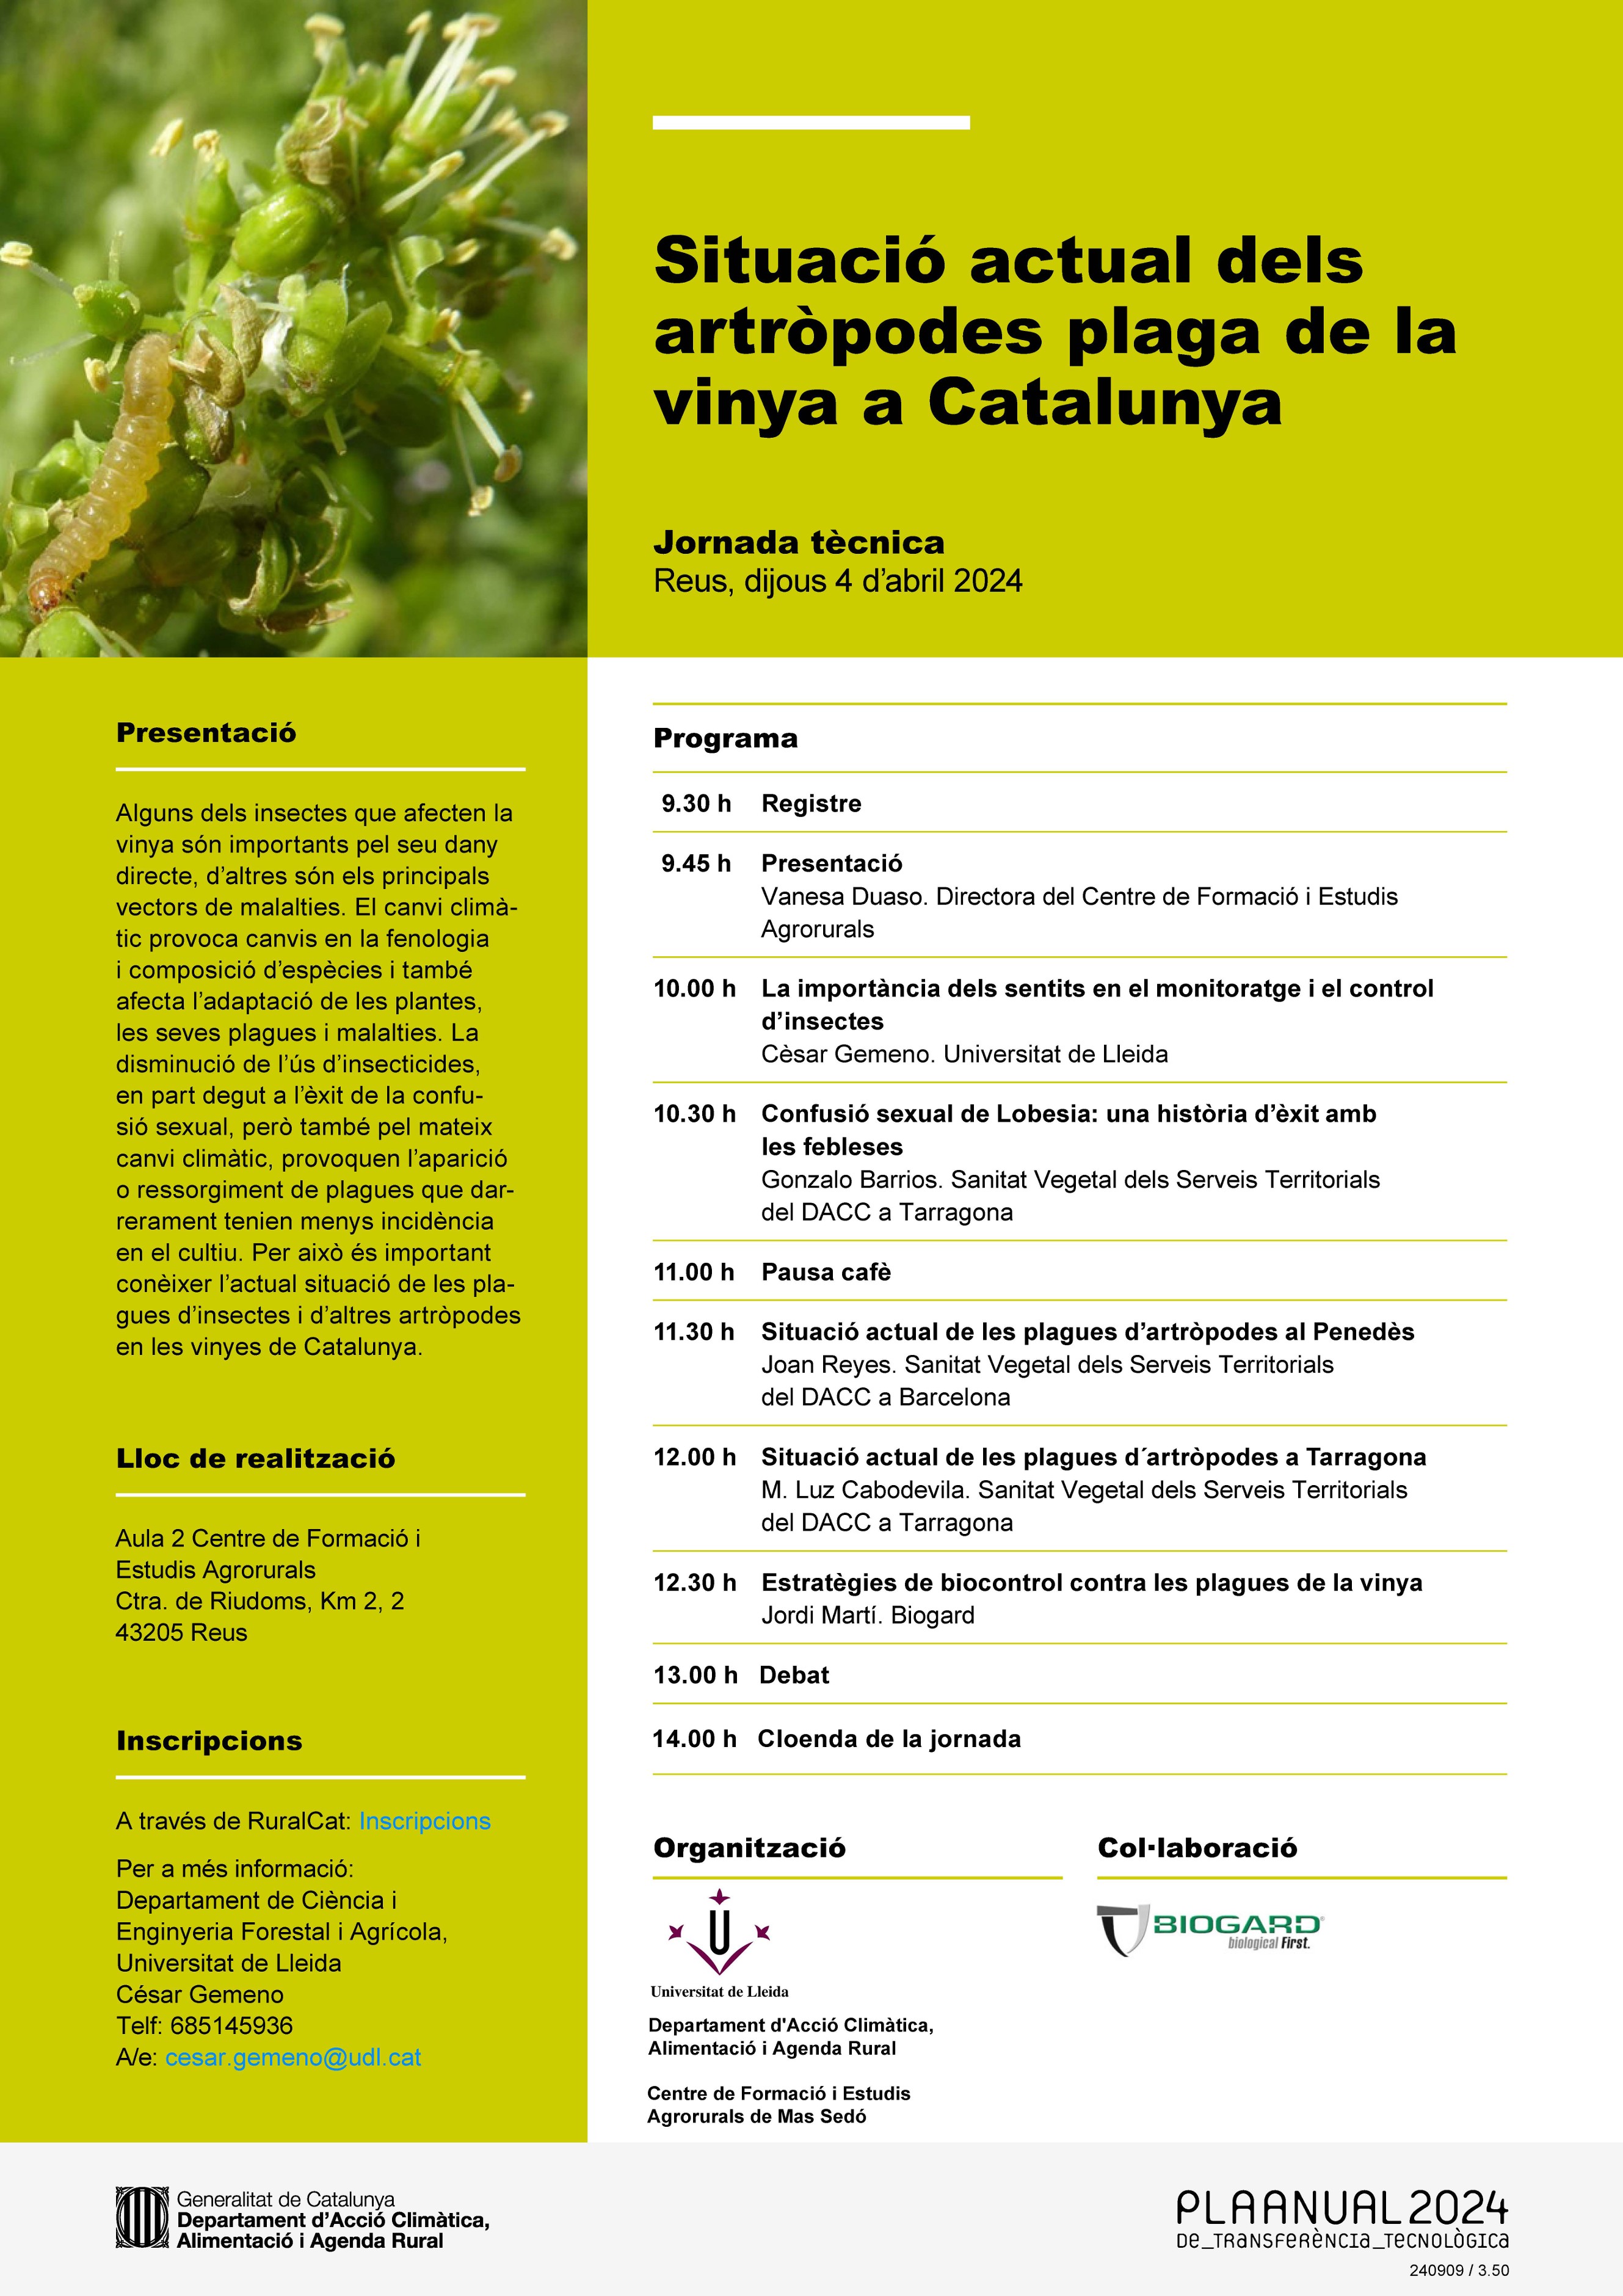 Situació actual dels artròpodes plaga de la vinya a Catalunya